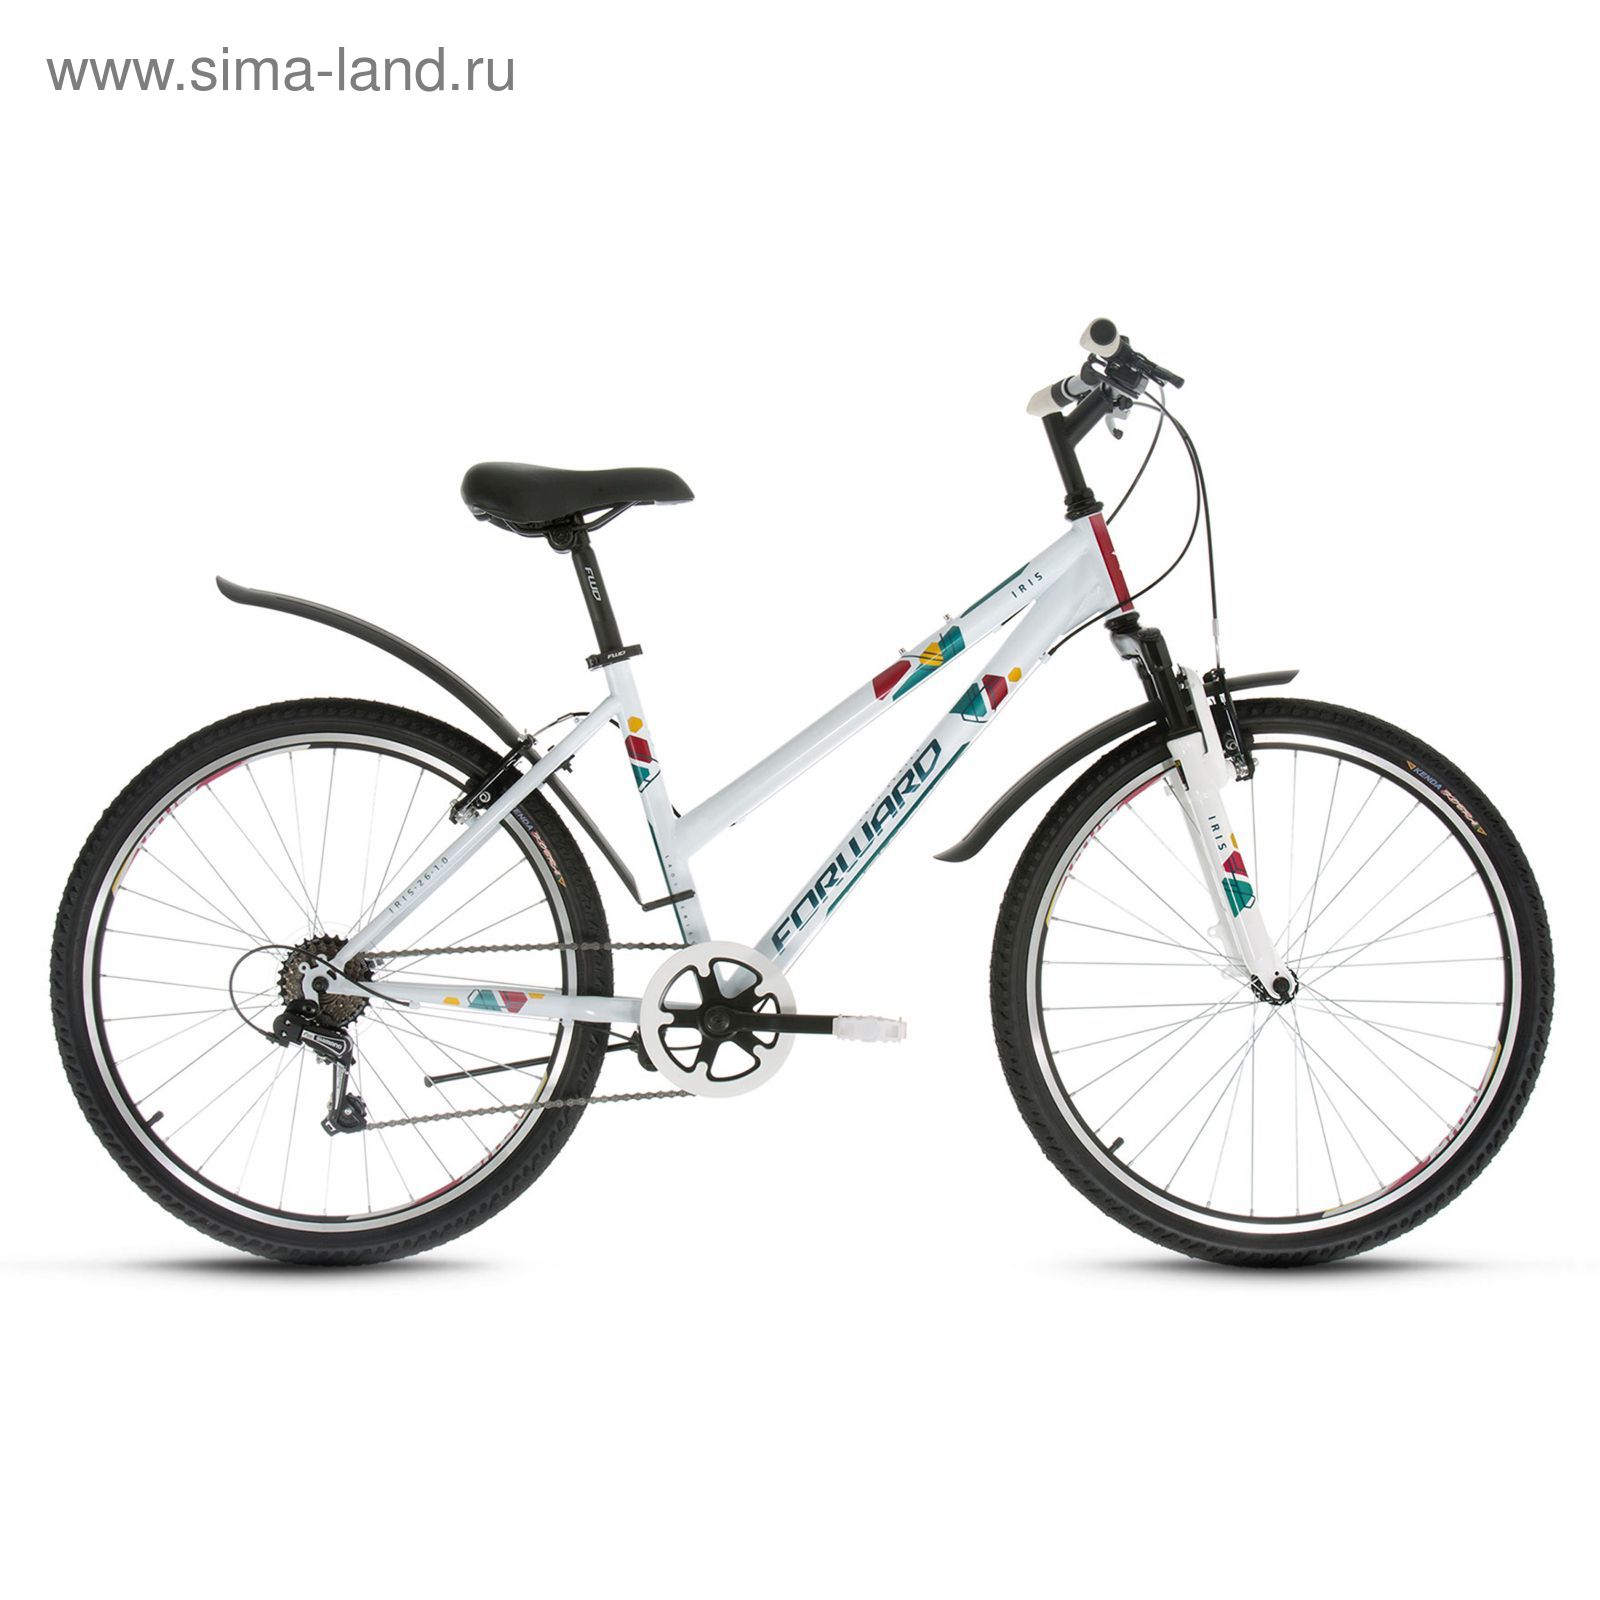 Велосипед купить набережные. Велосипед forward Iris 26 1.0. Велосипед Altair подростковый MTB HT 24 1.0. Велосипед forward Iris 24 2.0 d. Форвард Seido 26 2.0.